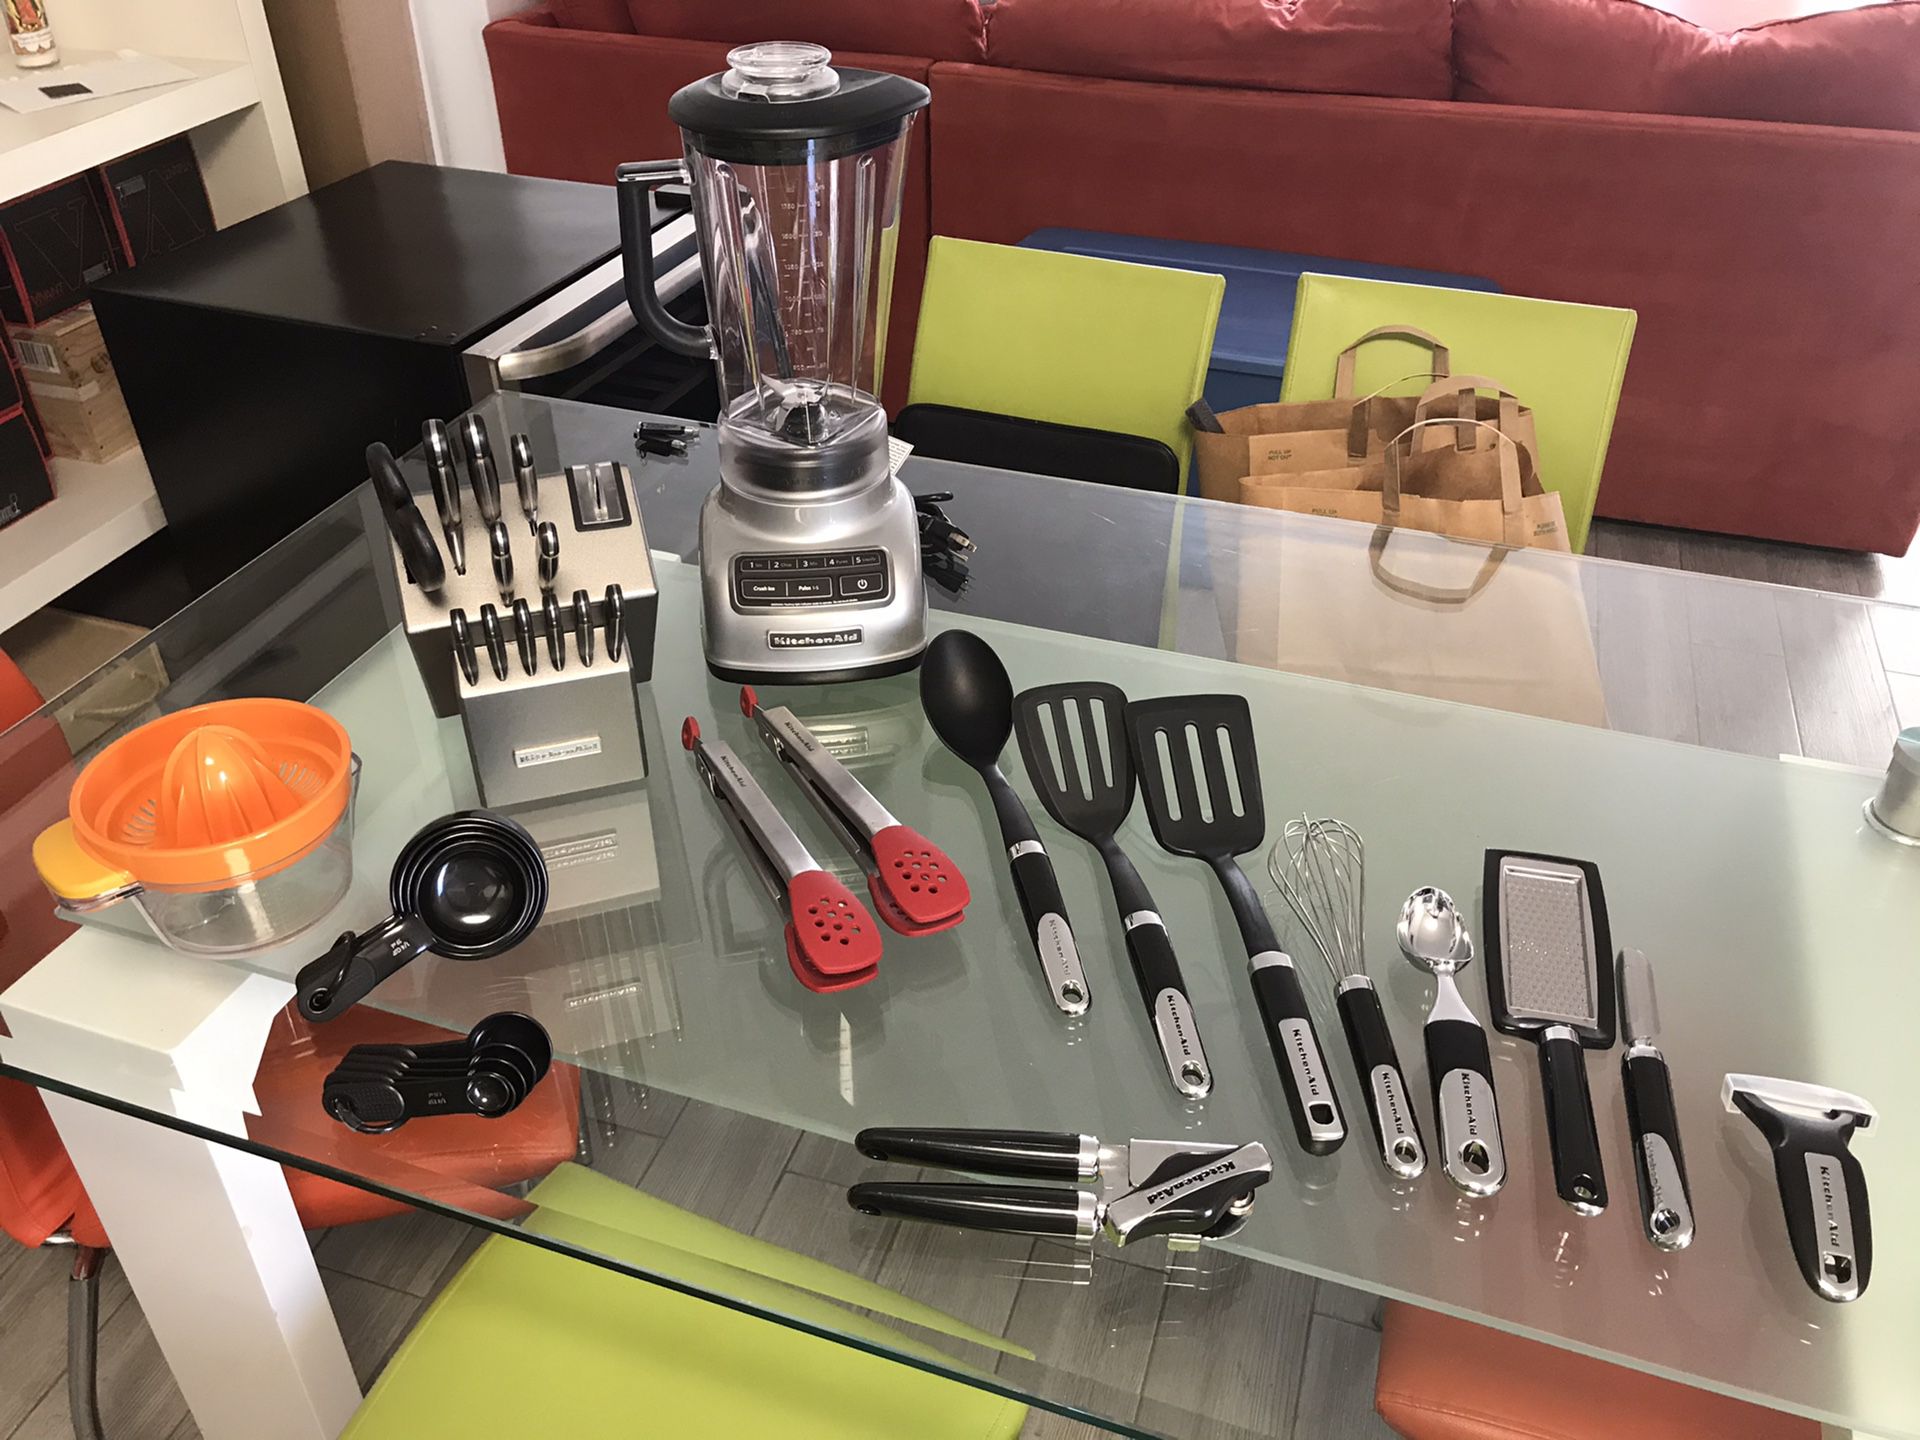 Kitchenaid bundle: Blender, knifes set, accessories